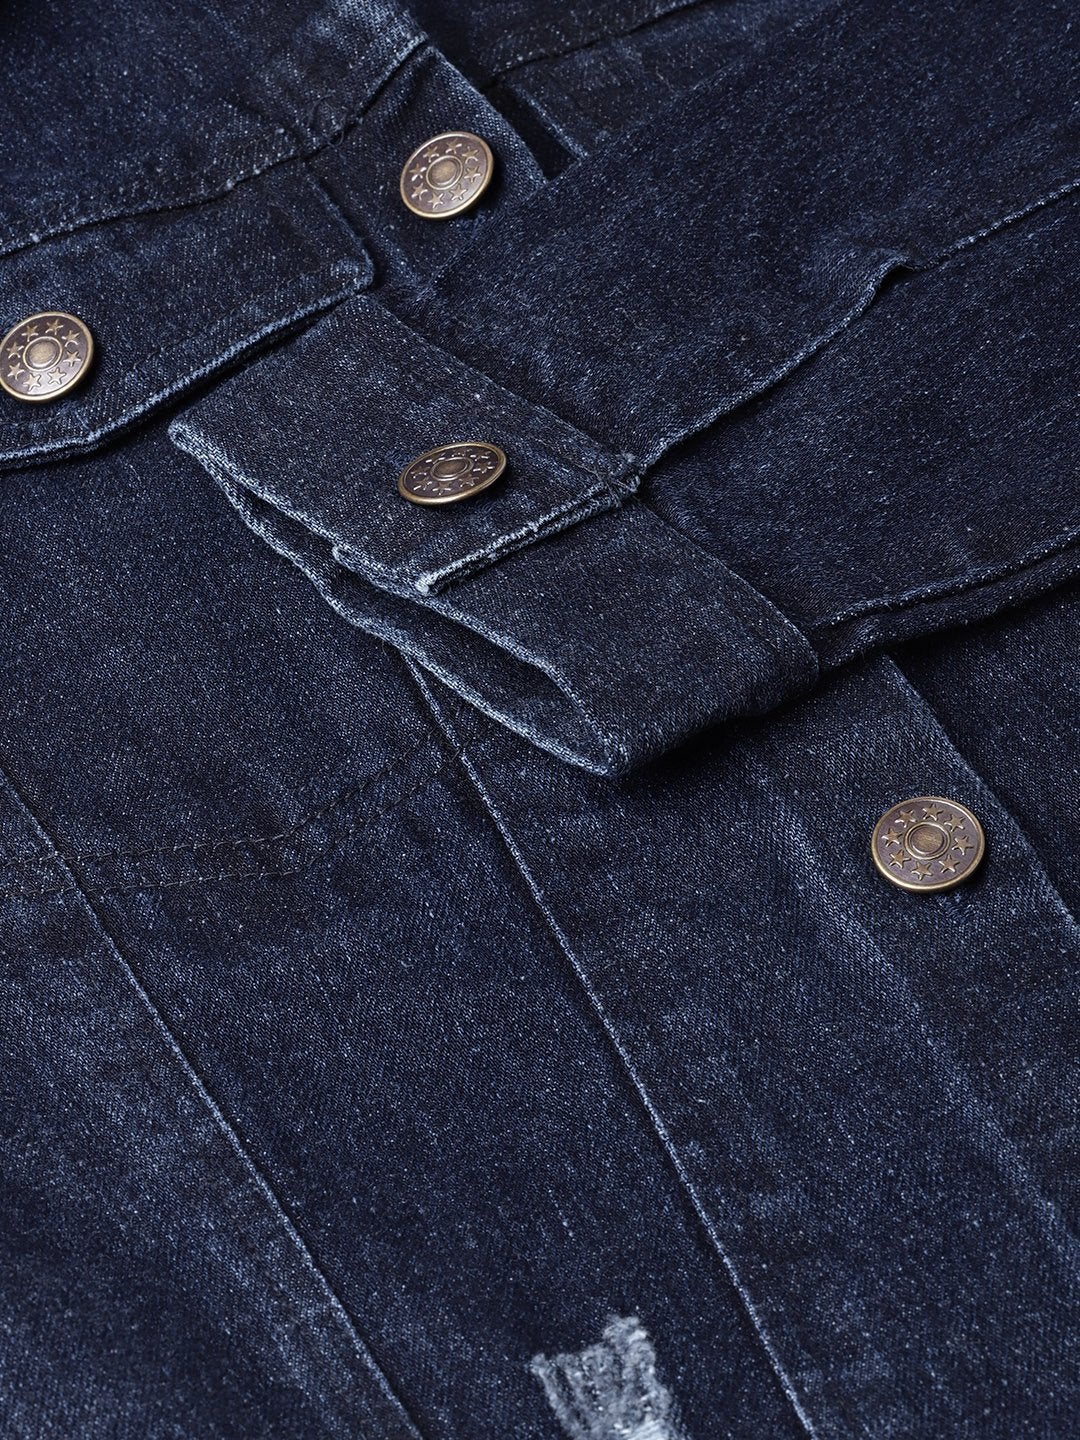 Women's Dark Blue Denim Distressed Jacket - SASSAFRAS